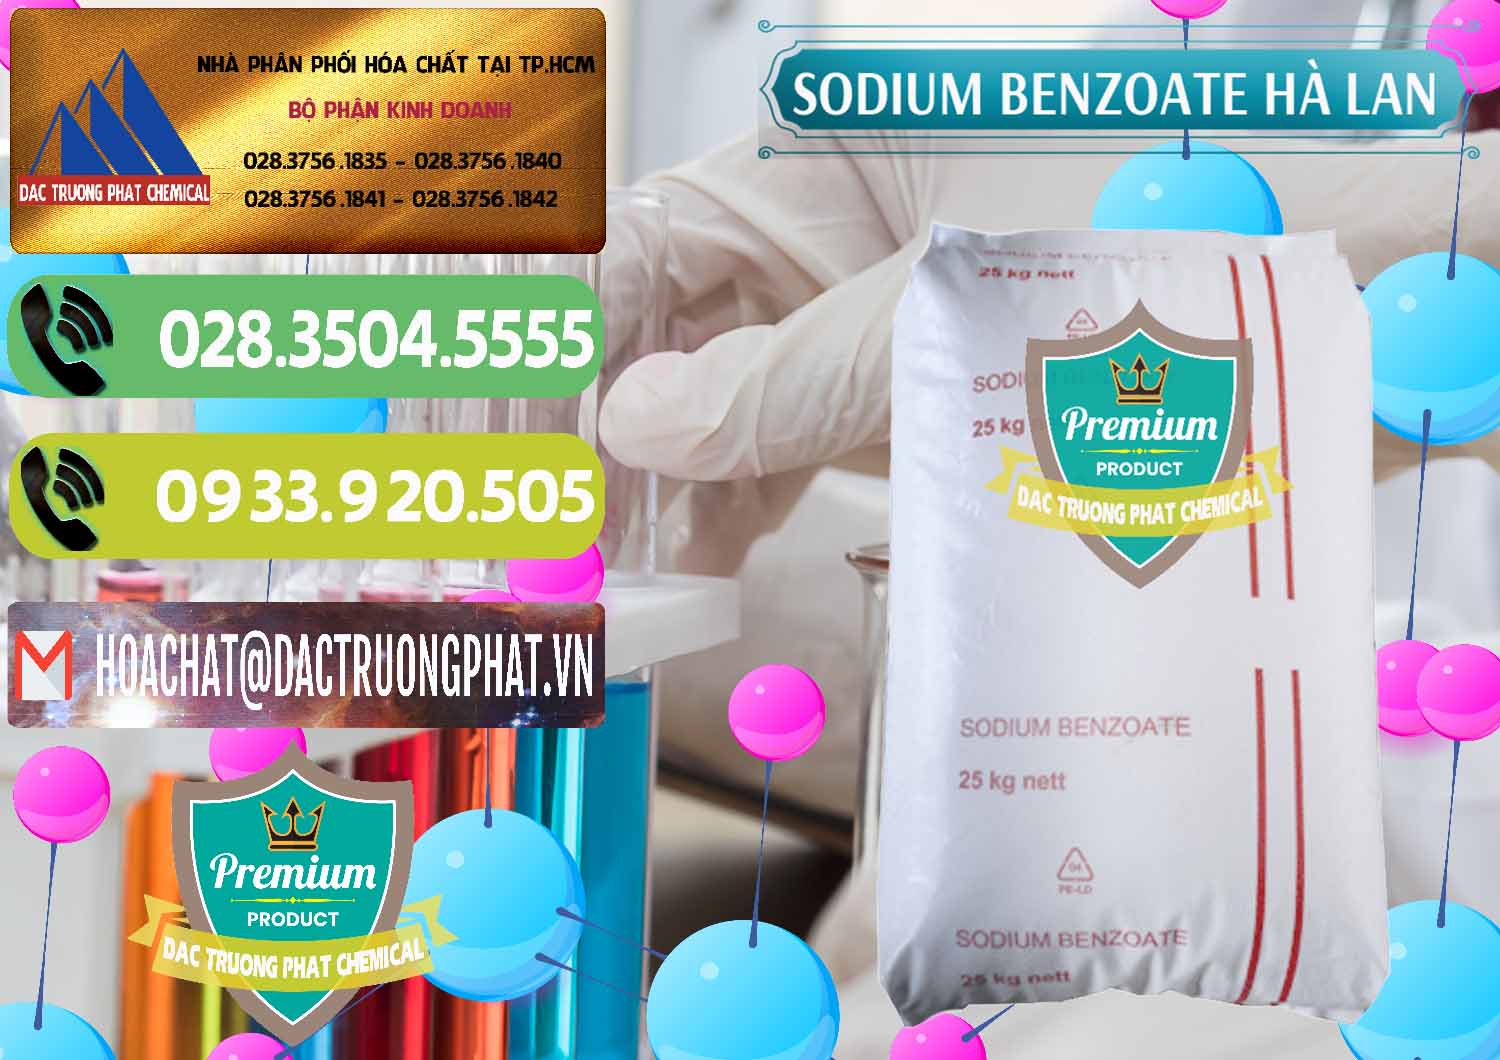 Cty chuyên bán và phân phối Sodium Benzoate - Mốc Bột Chữ Cam Hà Lan Netherlands - 0360 - Cty chuyên cung cấp - nhập khẩu hóa chất tại TP.HCM - hoachatmientay.vn